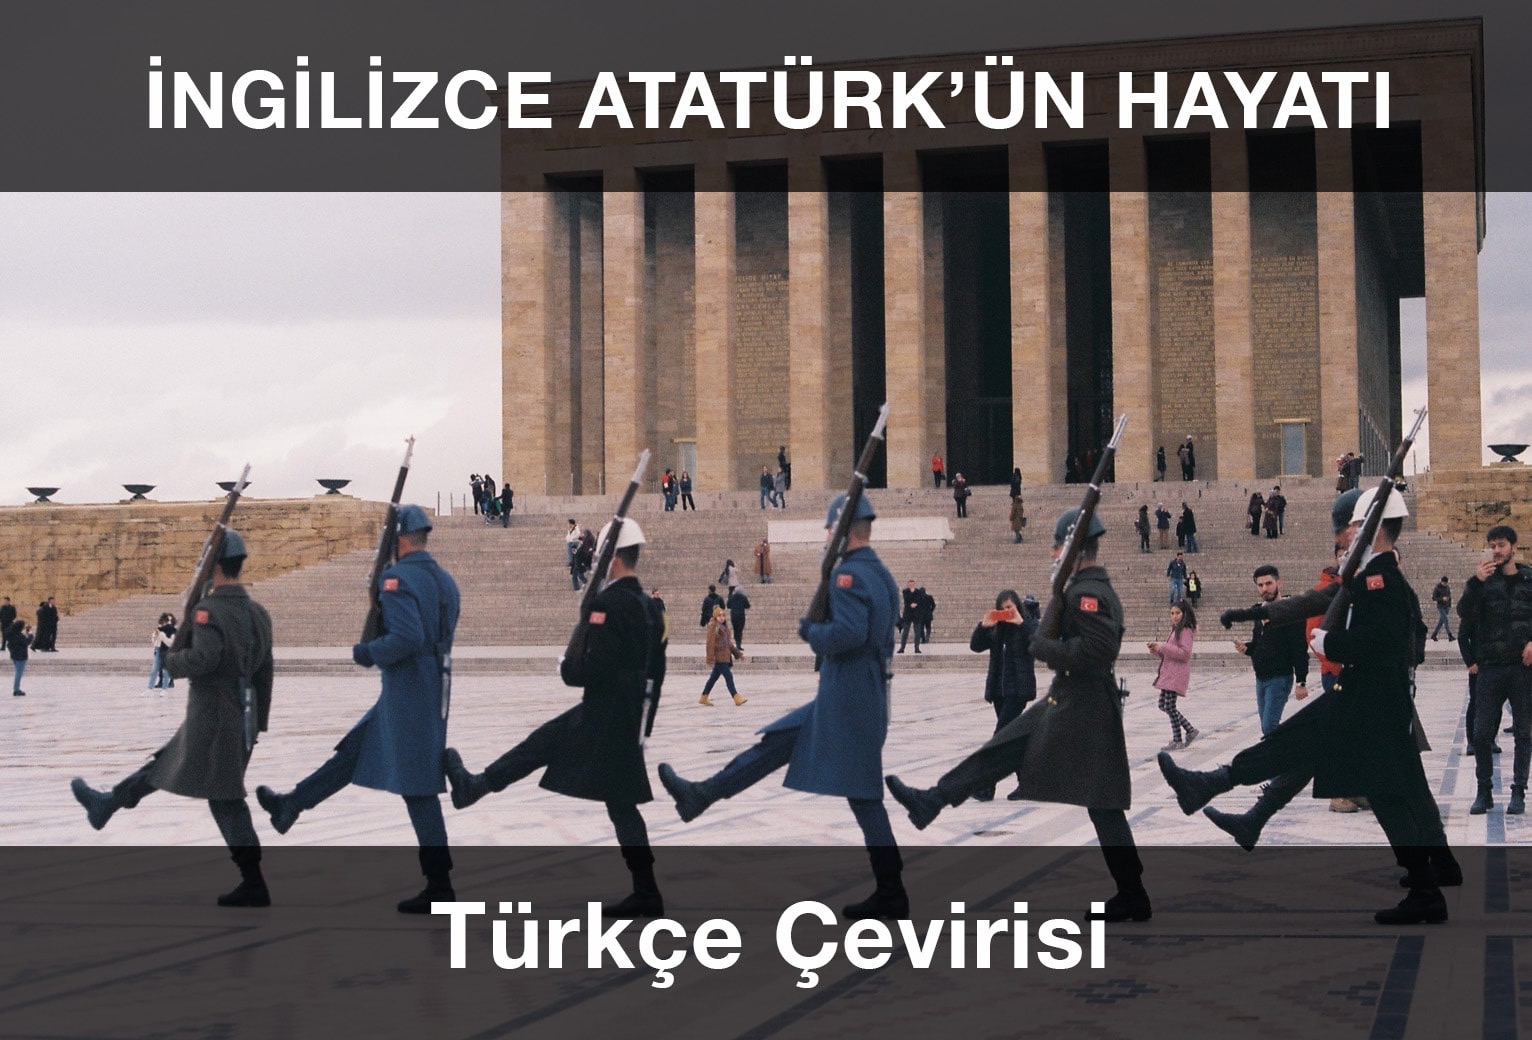 Atatürk’ün Hayatı İngilizce ve Türkçe